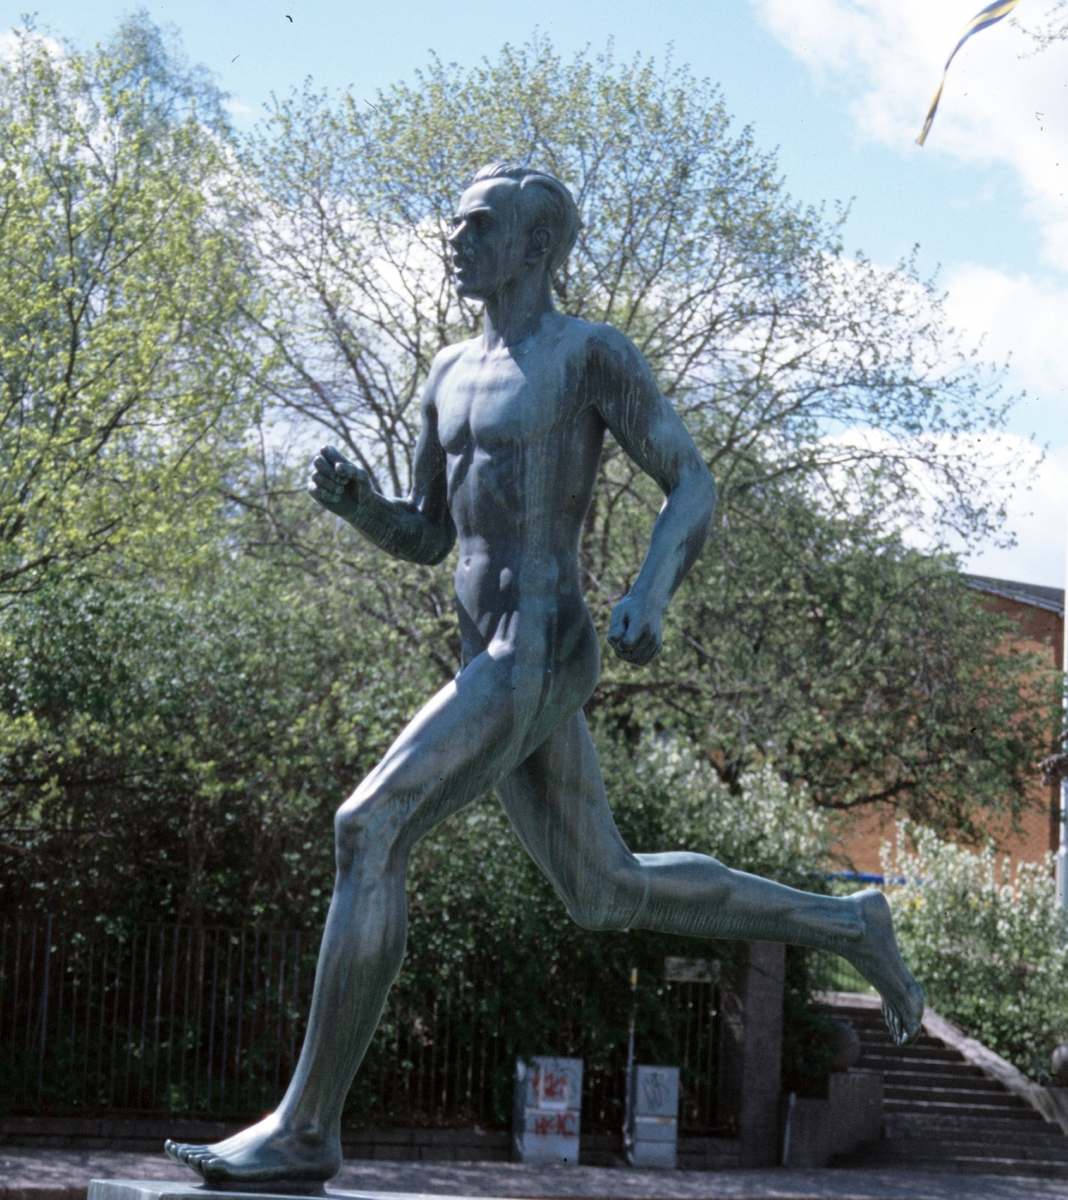 Staty "Löparen" av konstnären Olof Ahlberg.